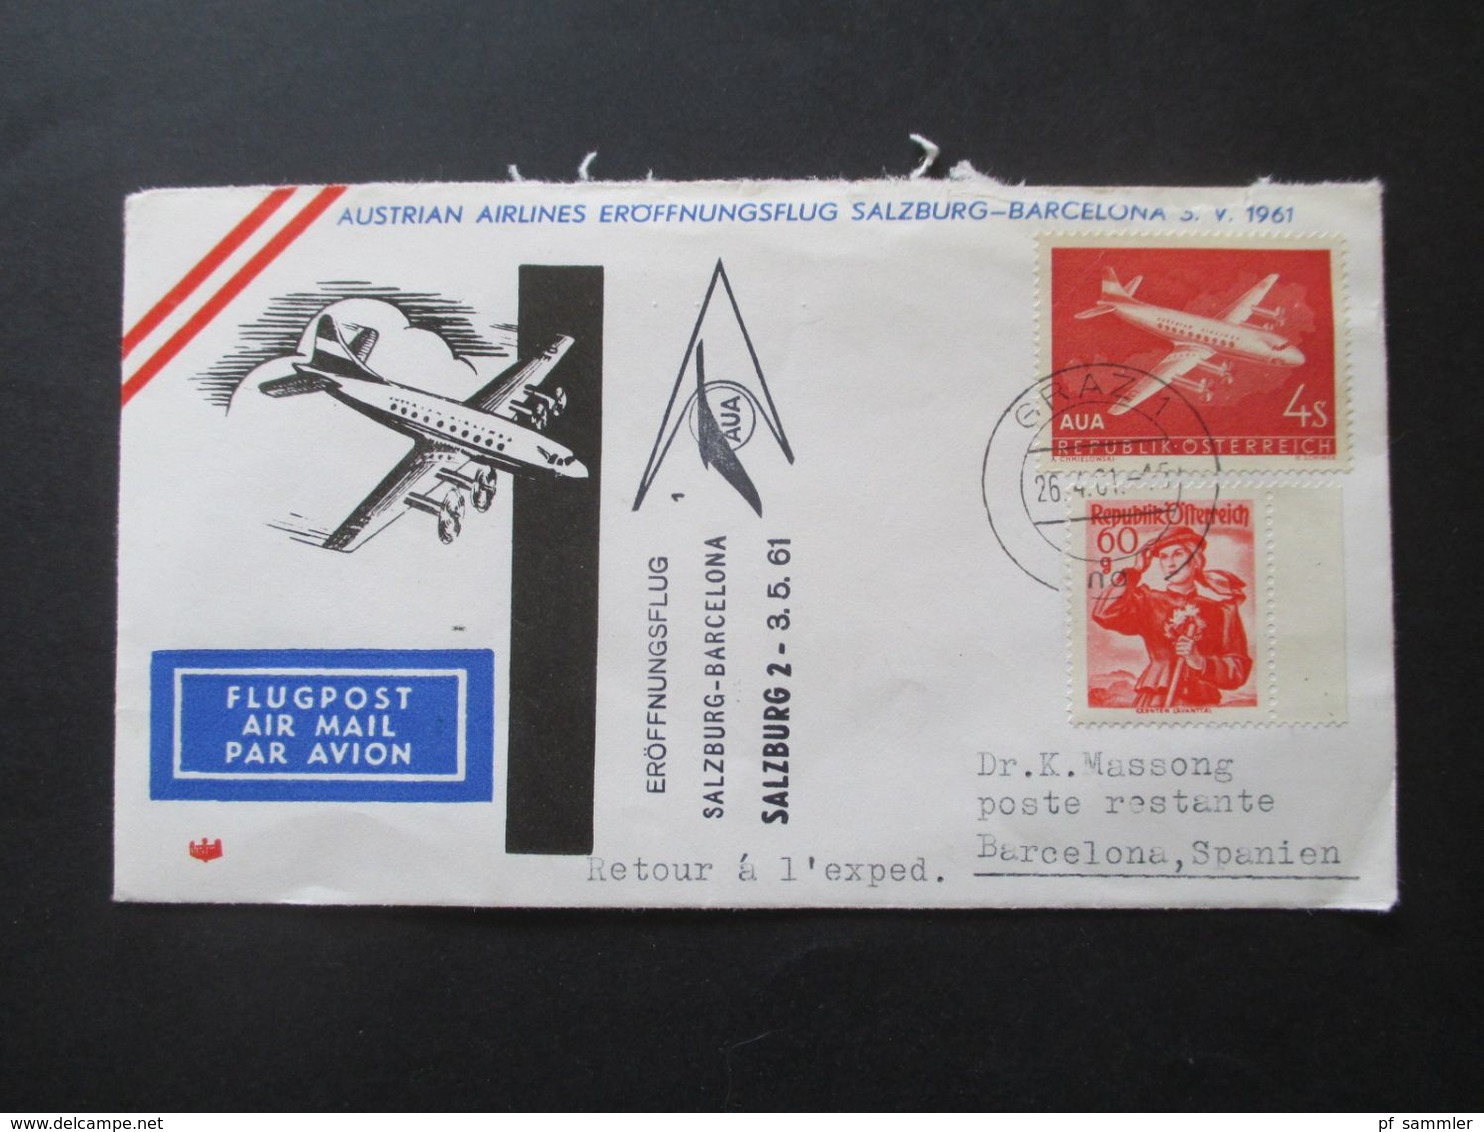 Österreich 1960 / 61 AUA Erstflüge 9 Belege + 1x Luposta Sternflug. Flugpost Belege / Poste Restante - Cartas & Documentos